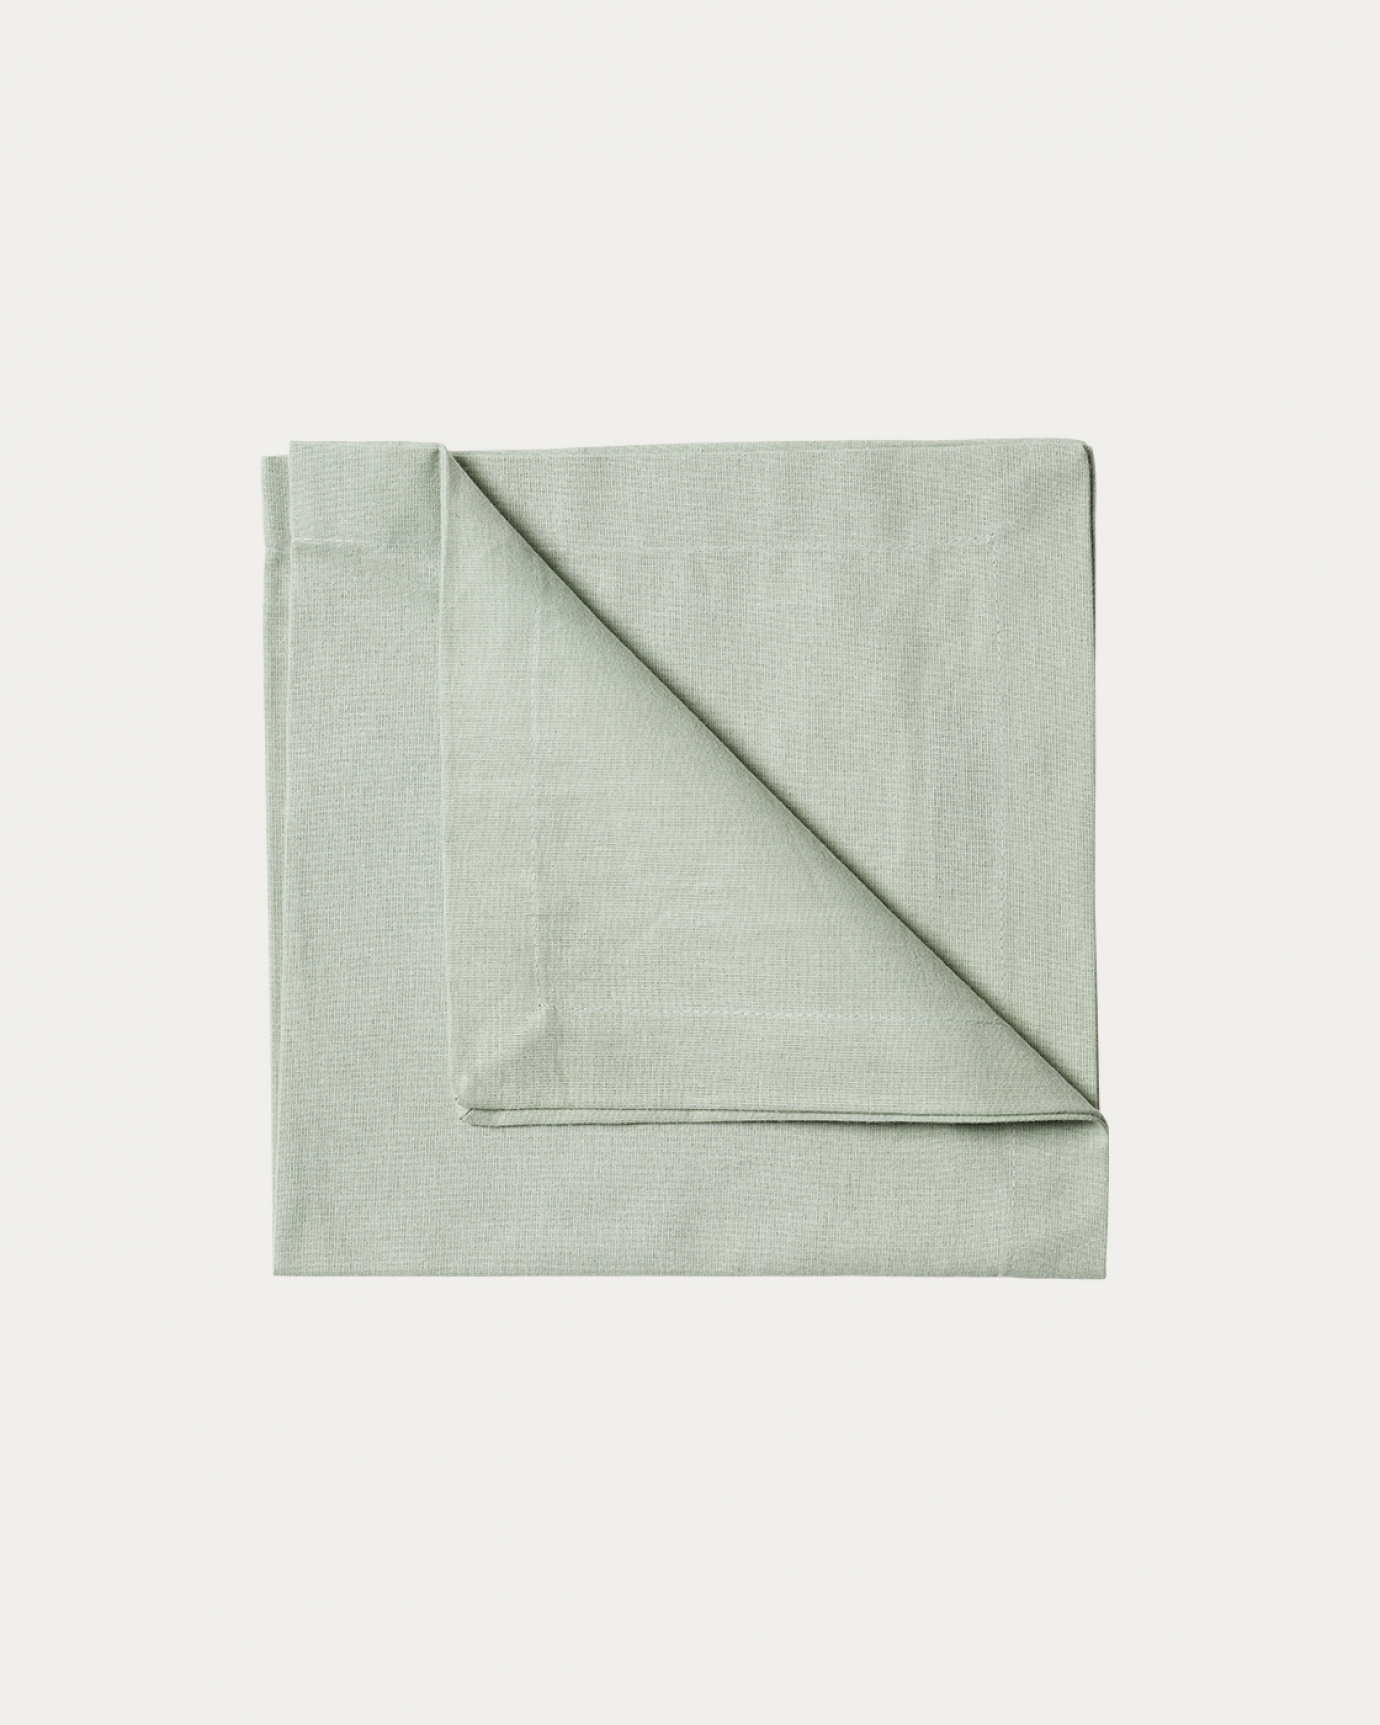 Produktbild helles eisgrün ROBERT Serviette aus weicher Baumwolle von LINUM DESIGN. Größe 45x45 cm und in 4er-Pack verkauft.